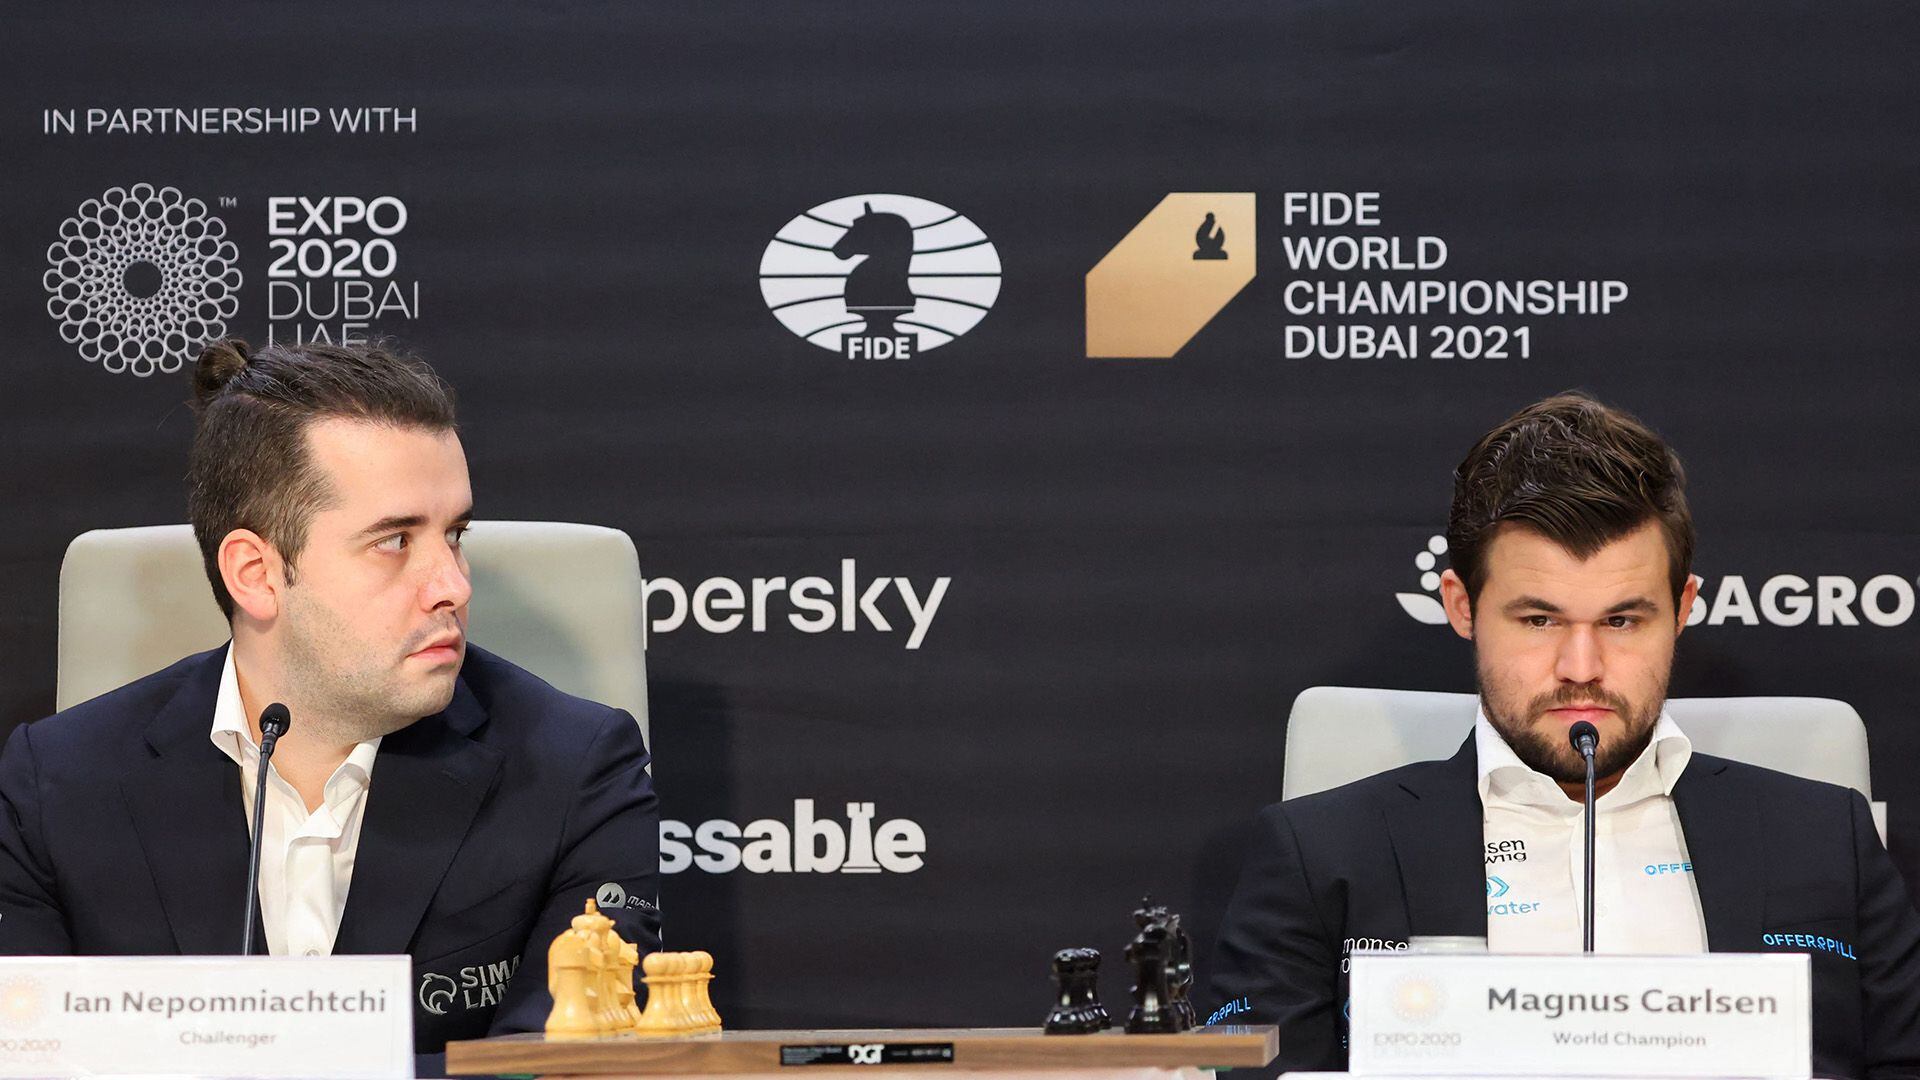 Dubai ceremonia de inauguración y sorteo de la serie final del campeonato mundial de ajedrez